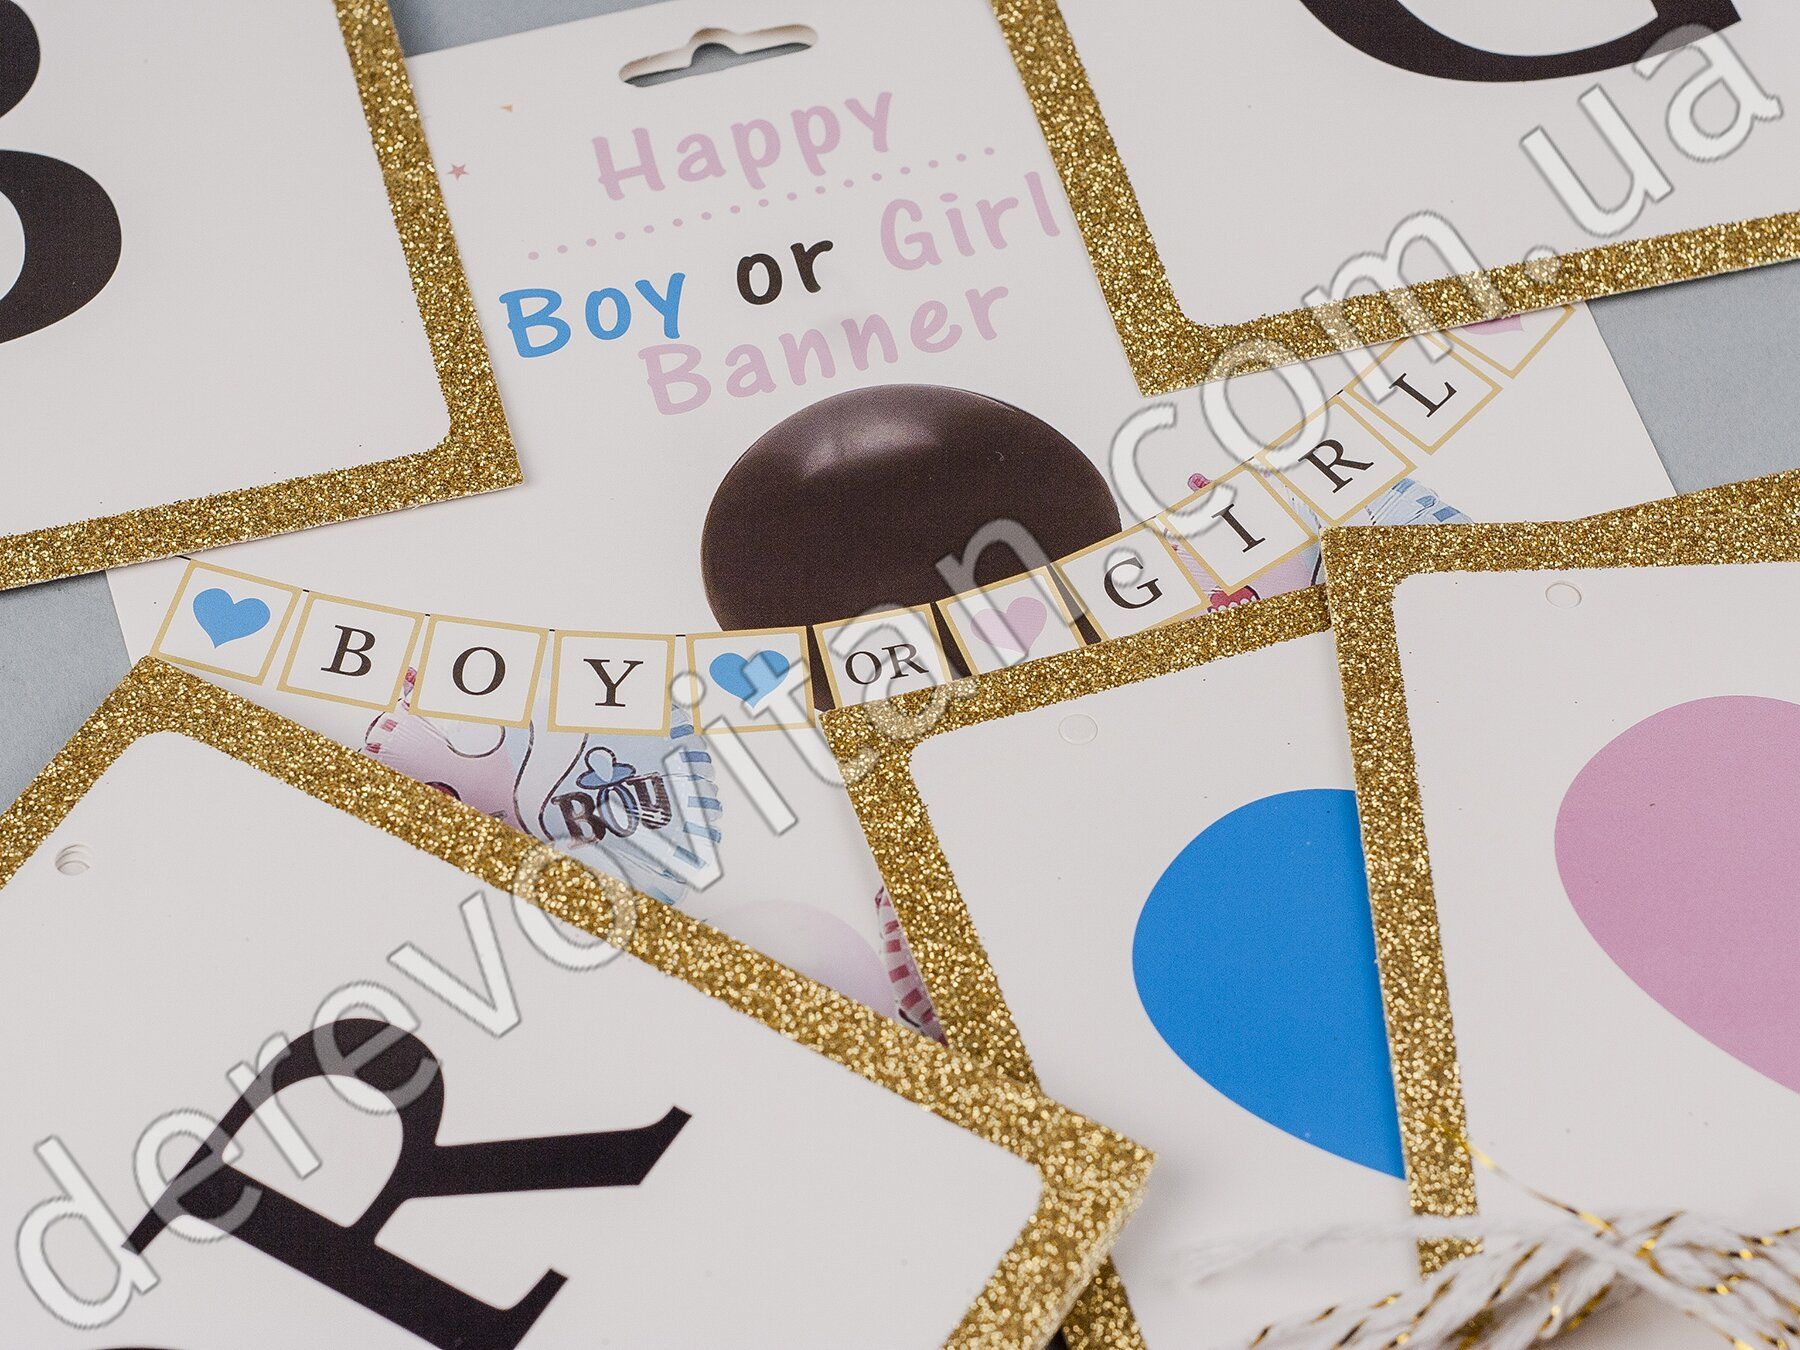 Гирлянда из флажков для Gender Reveal Party "Boy or Girl", 2 м